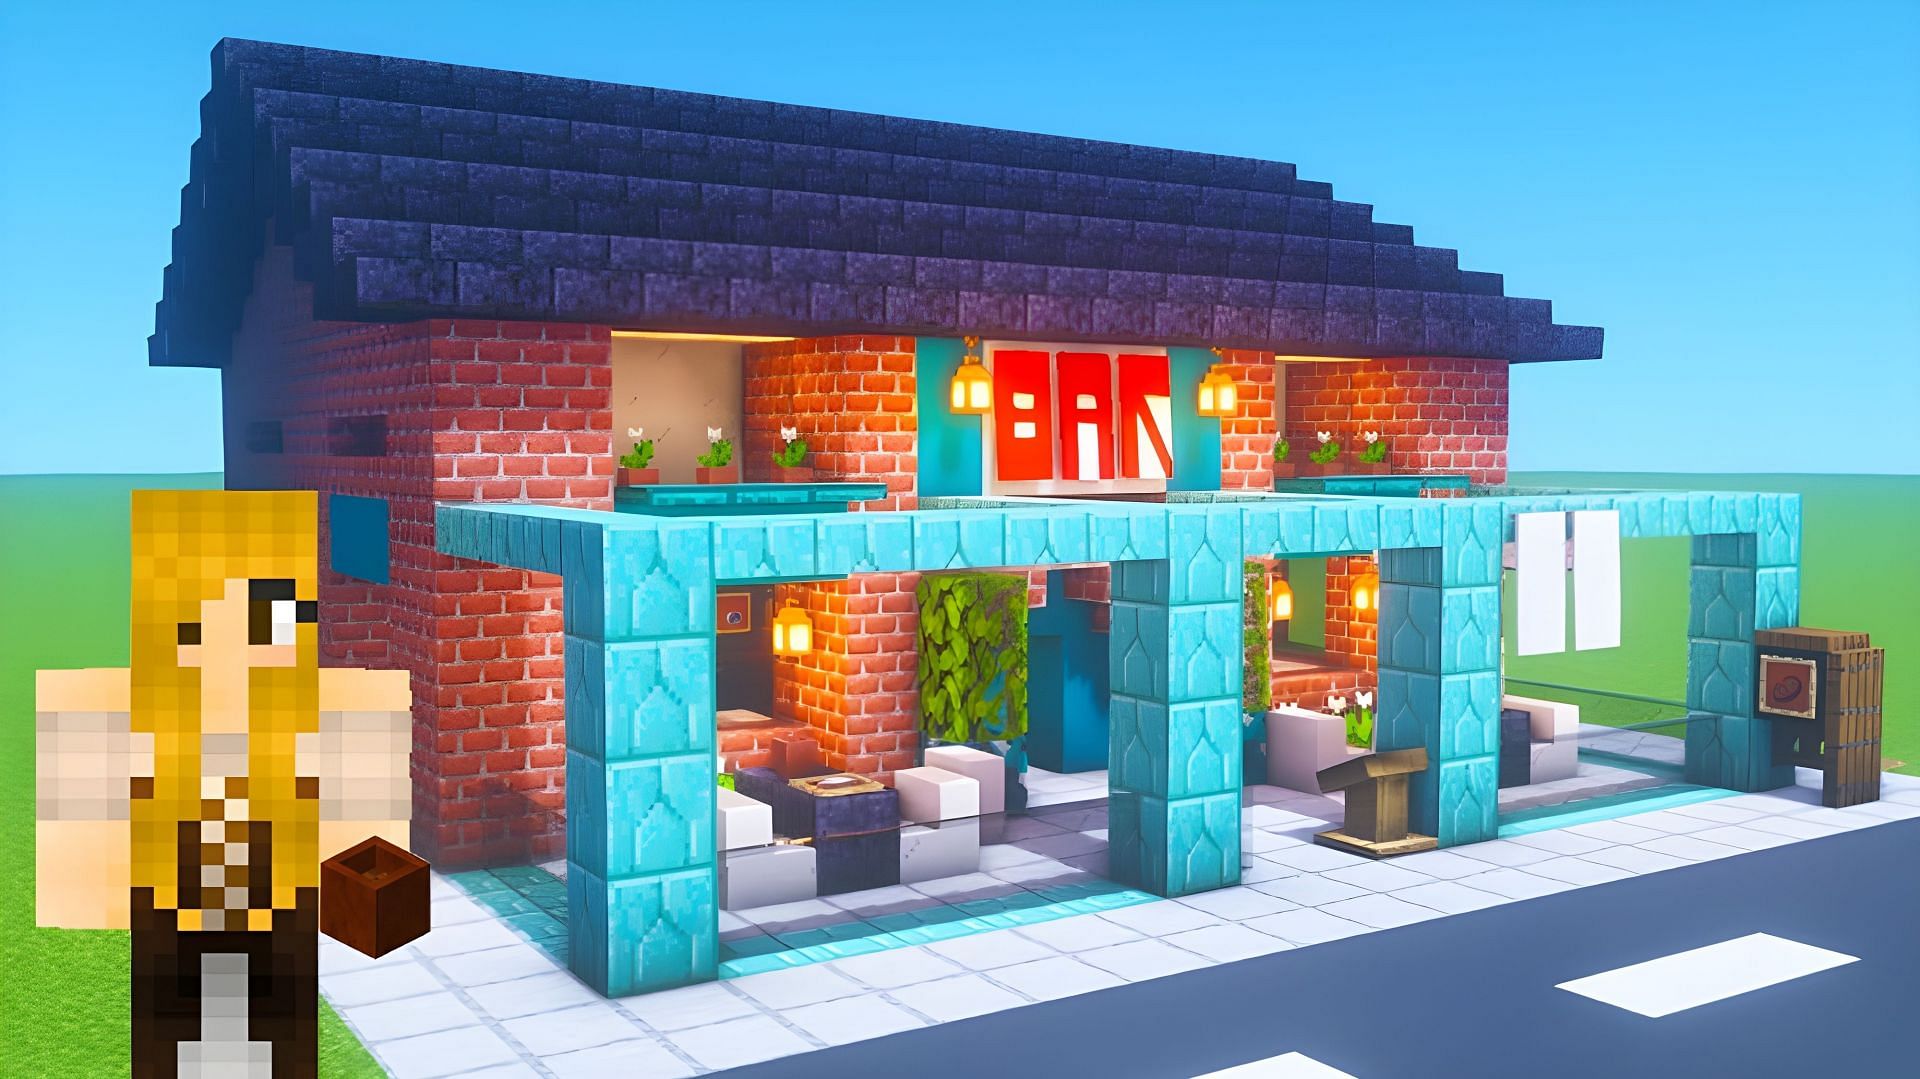 Bar in City build (Image via YouTube/TSMC - Minecraft)